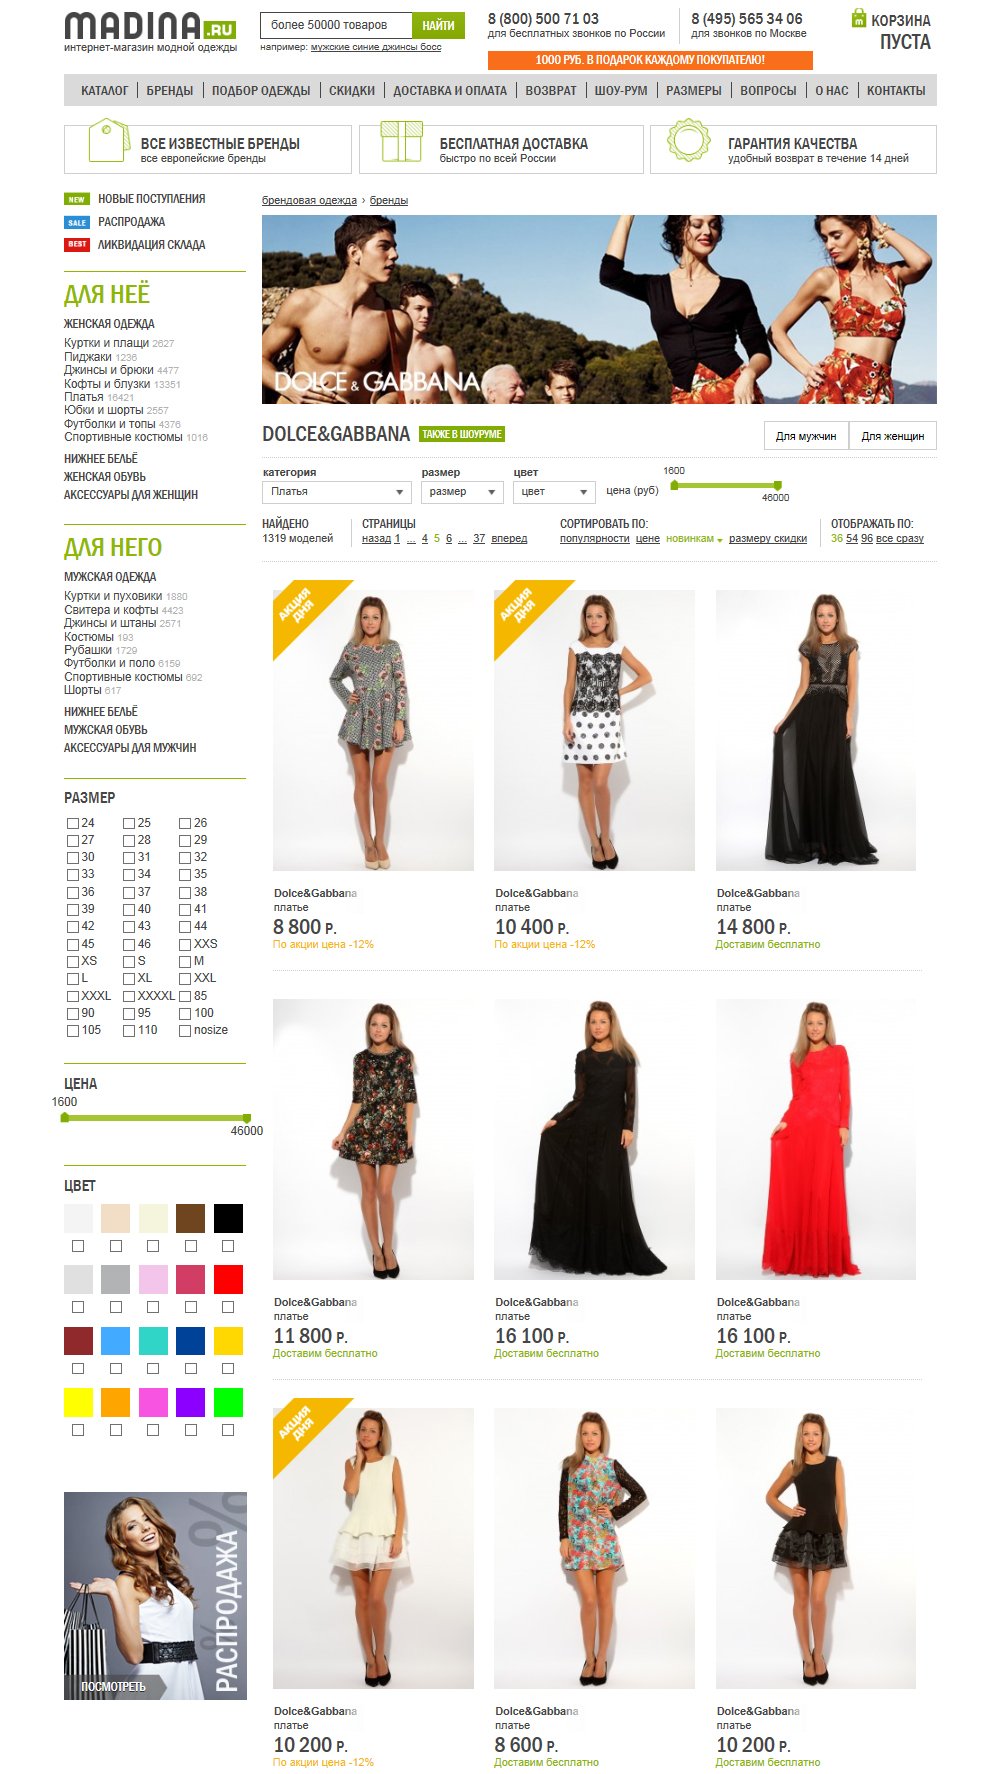 Страница бренда в интернет-магазине модной одежды Madina.ru